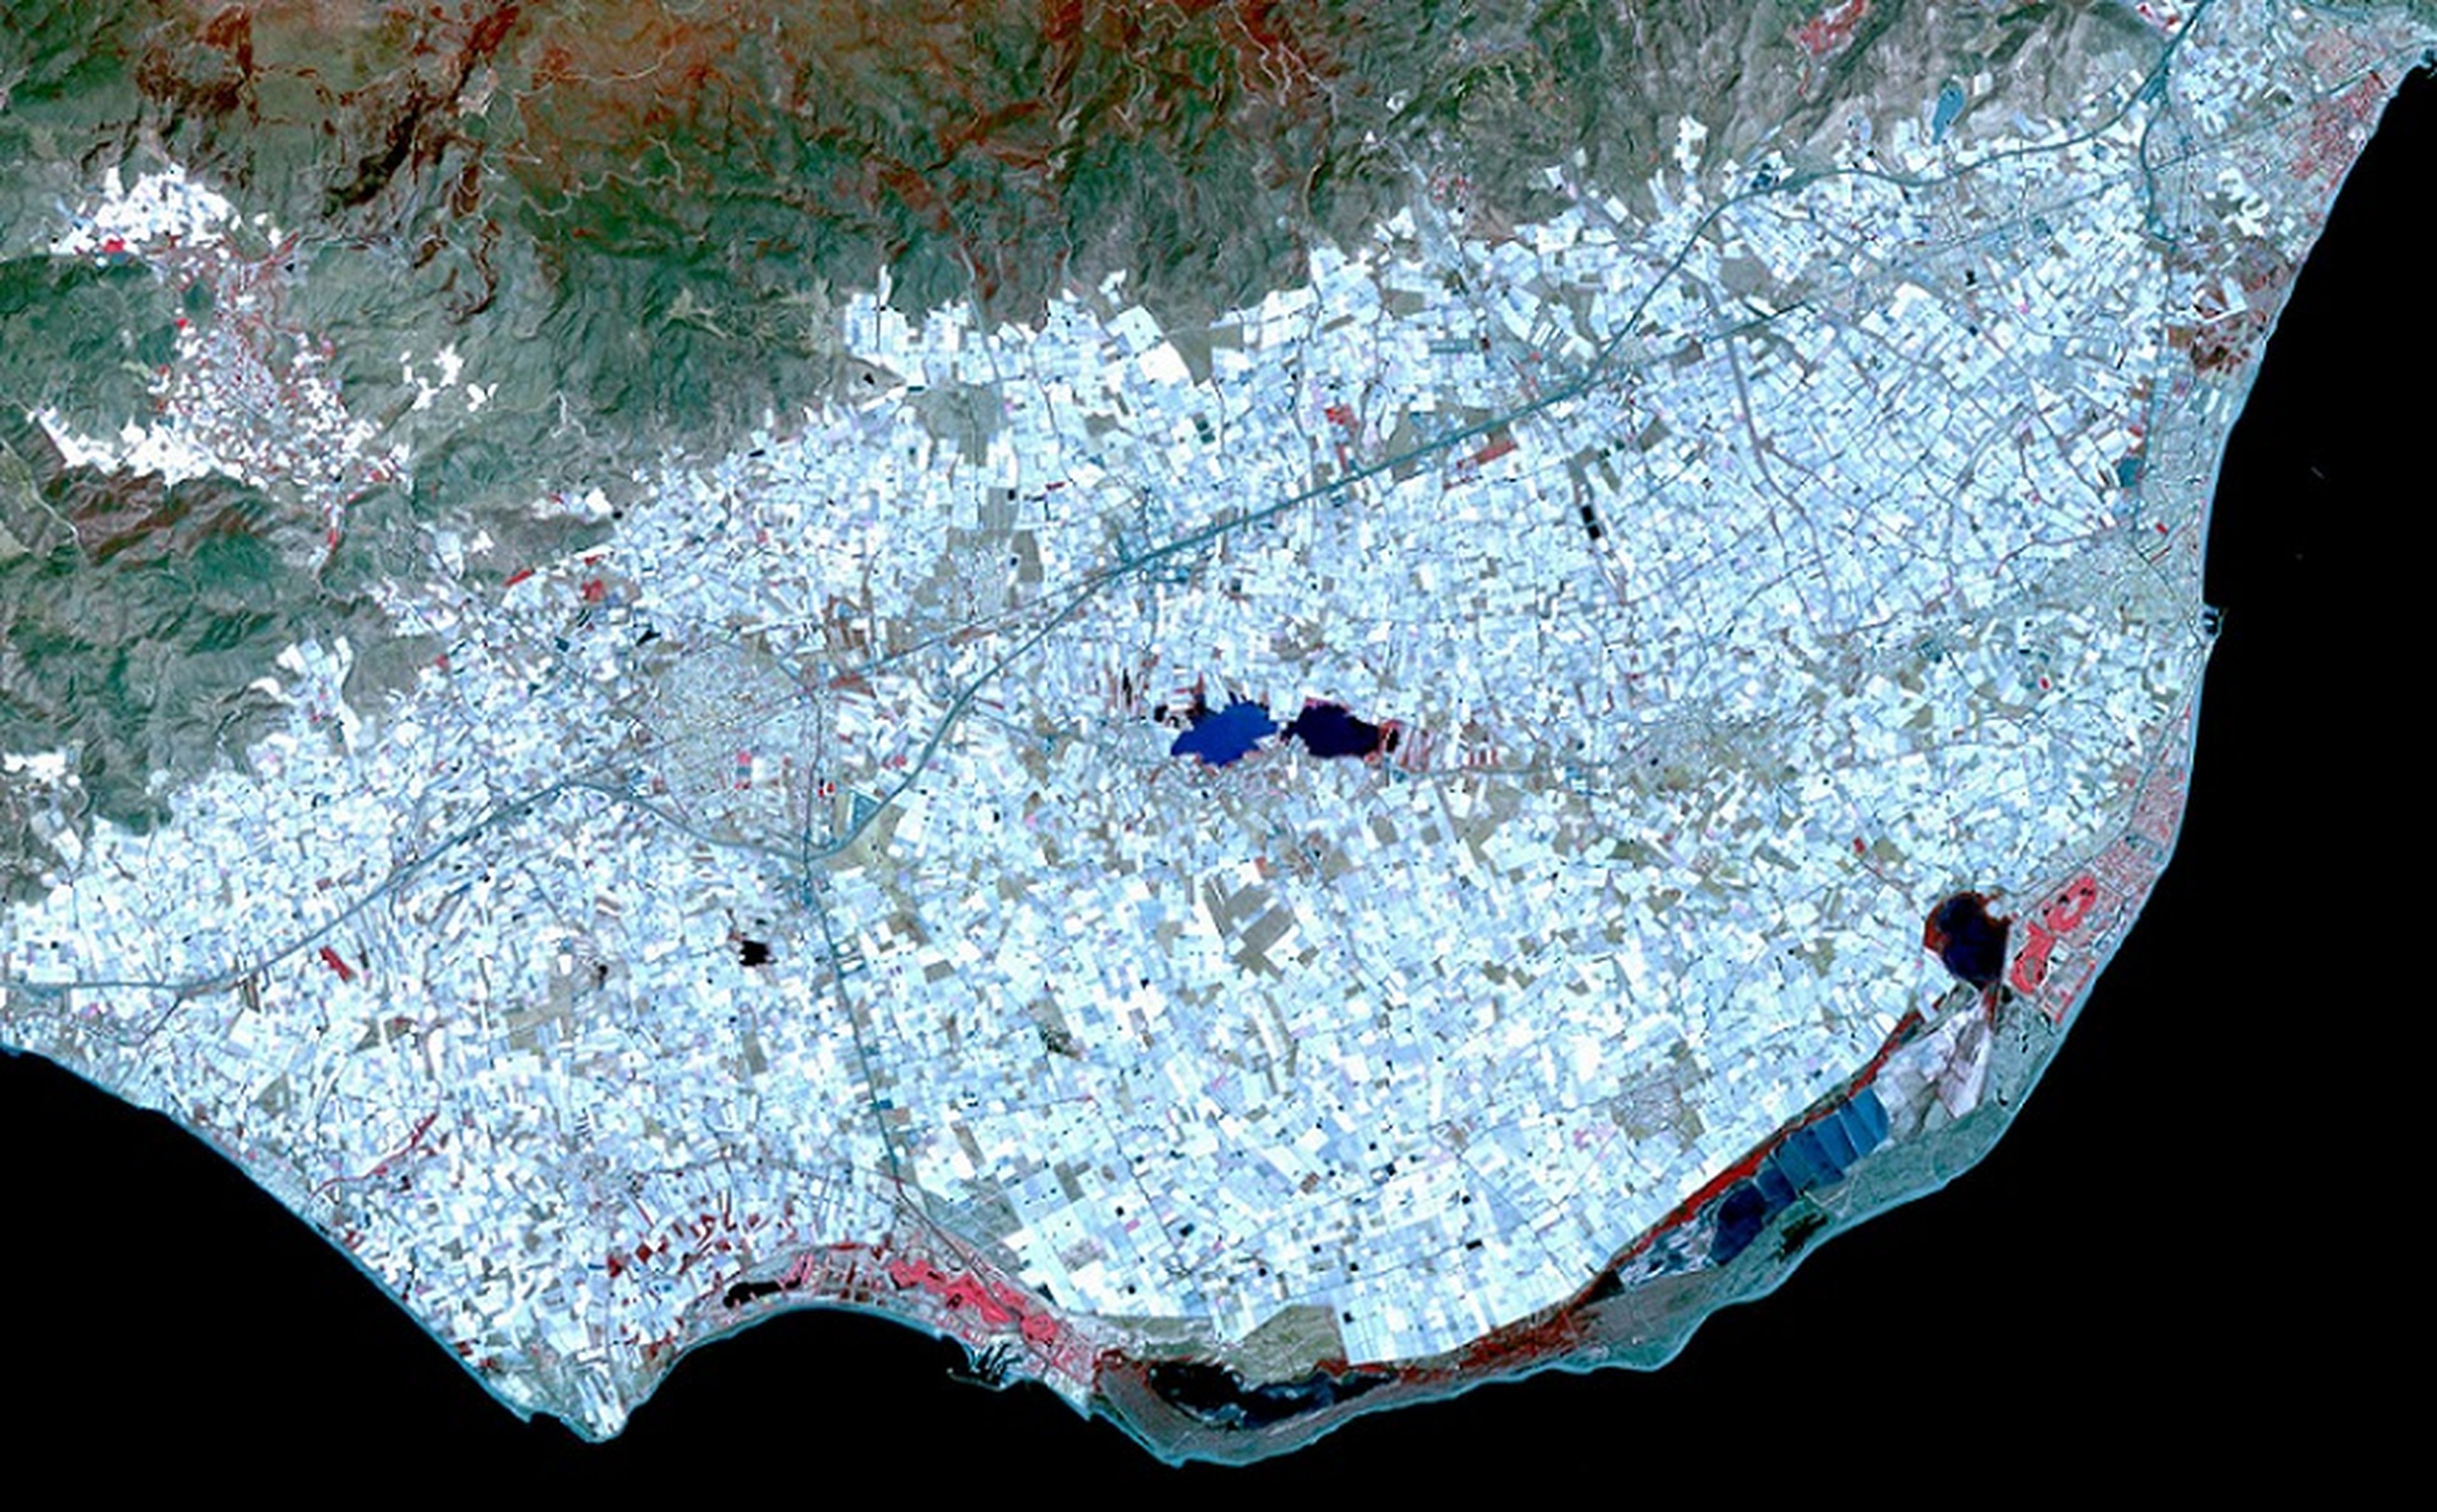 Mar de plástico de Almería.